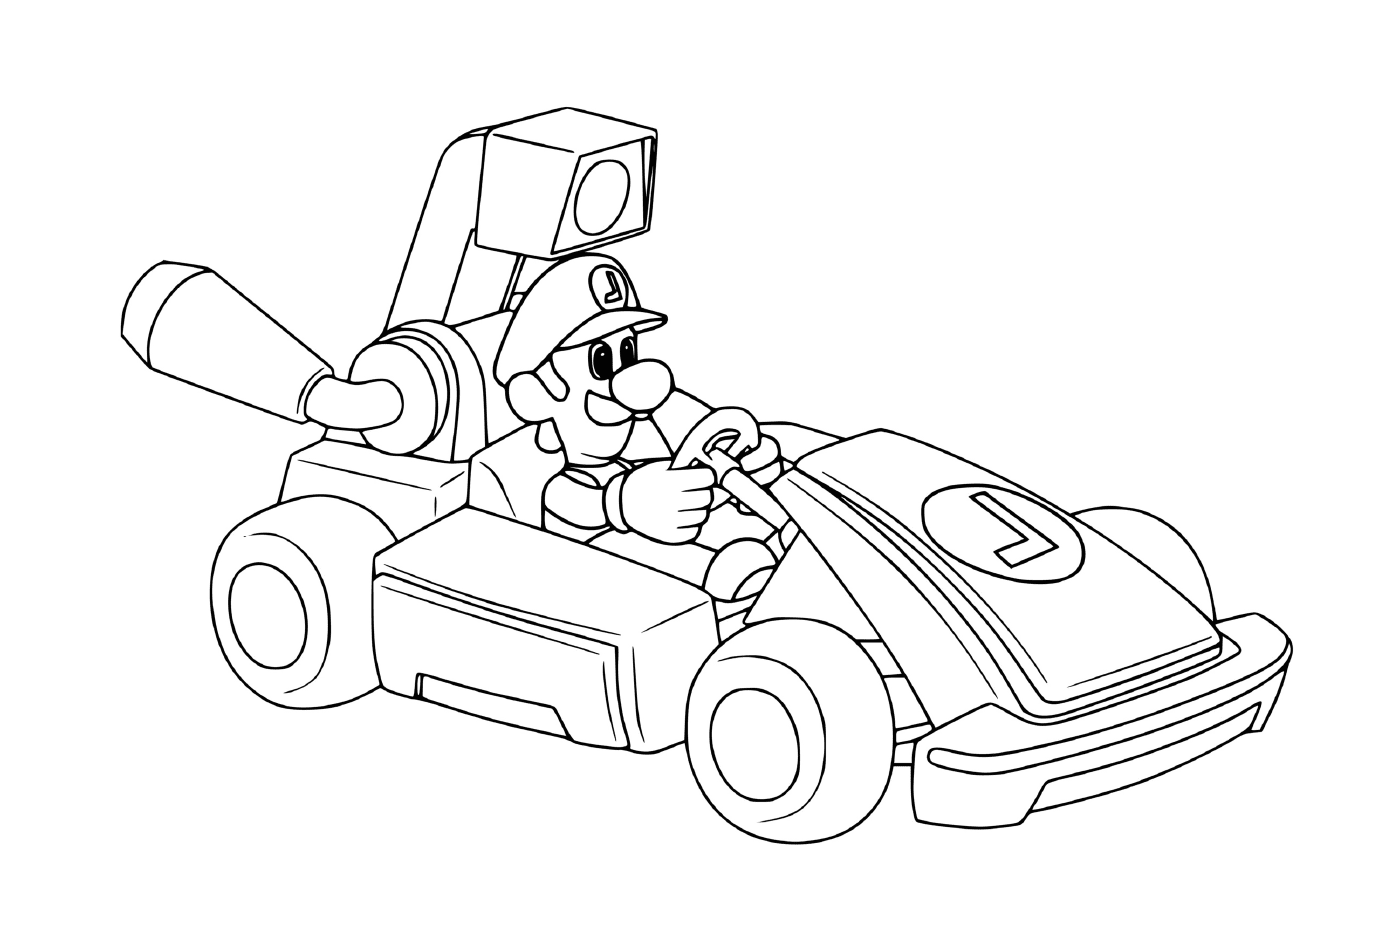  Luigi se prepara para la carrera de coches 